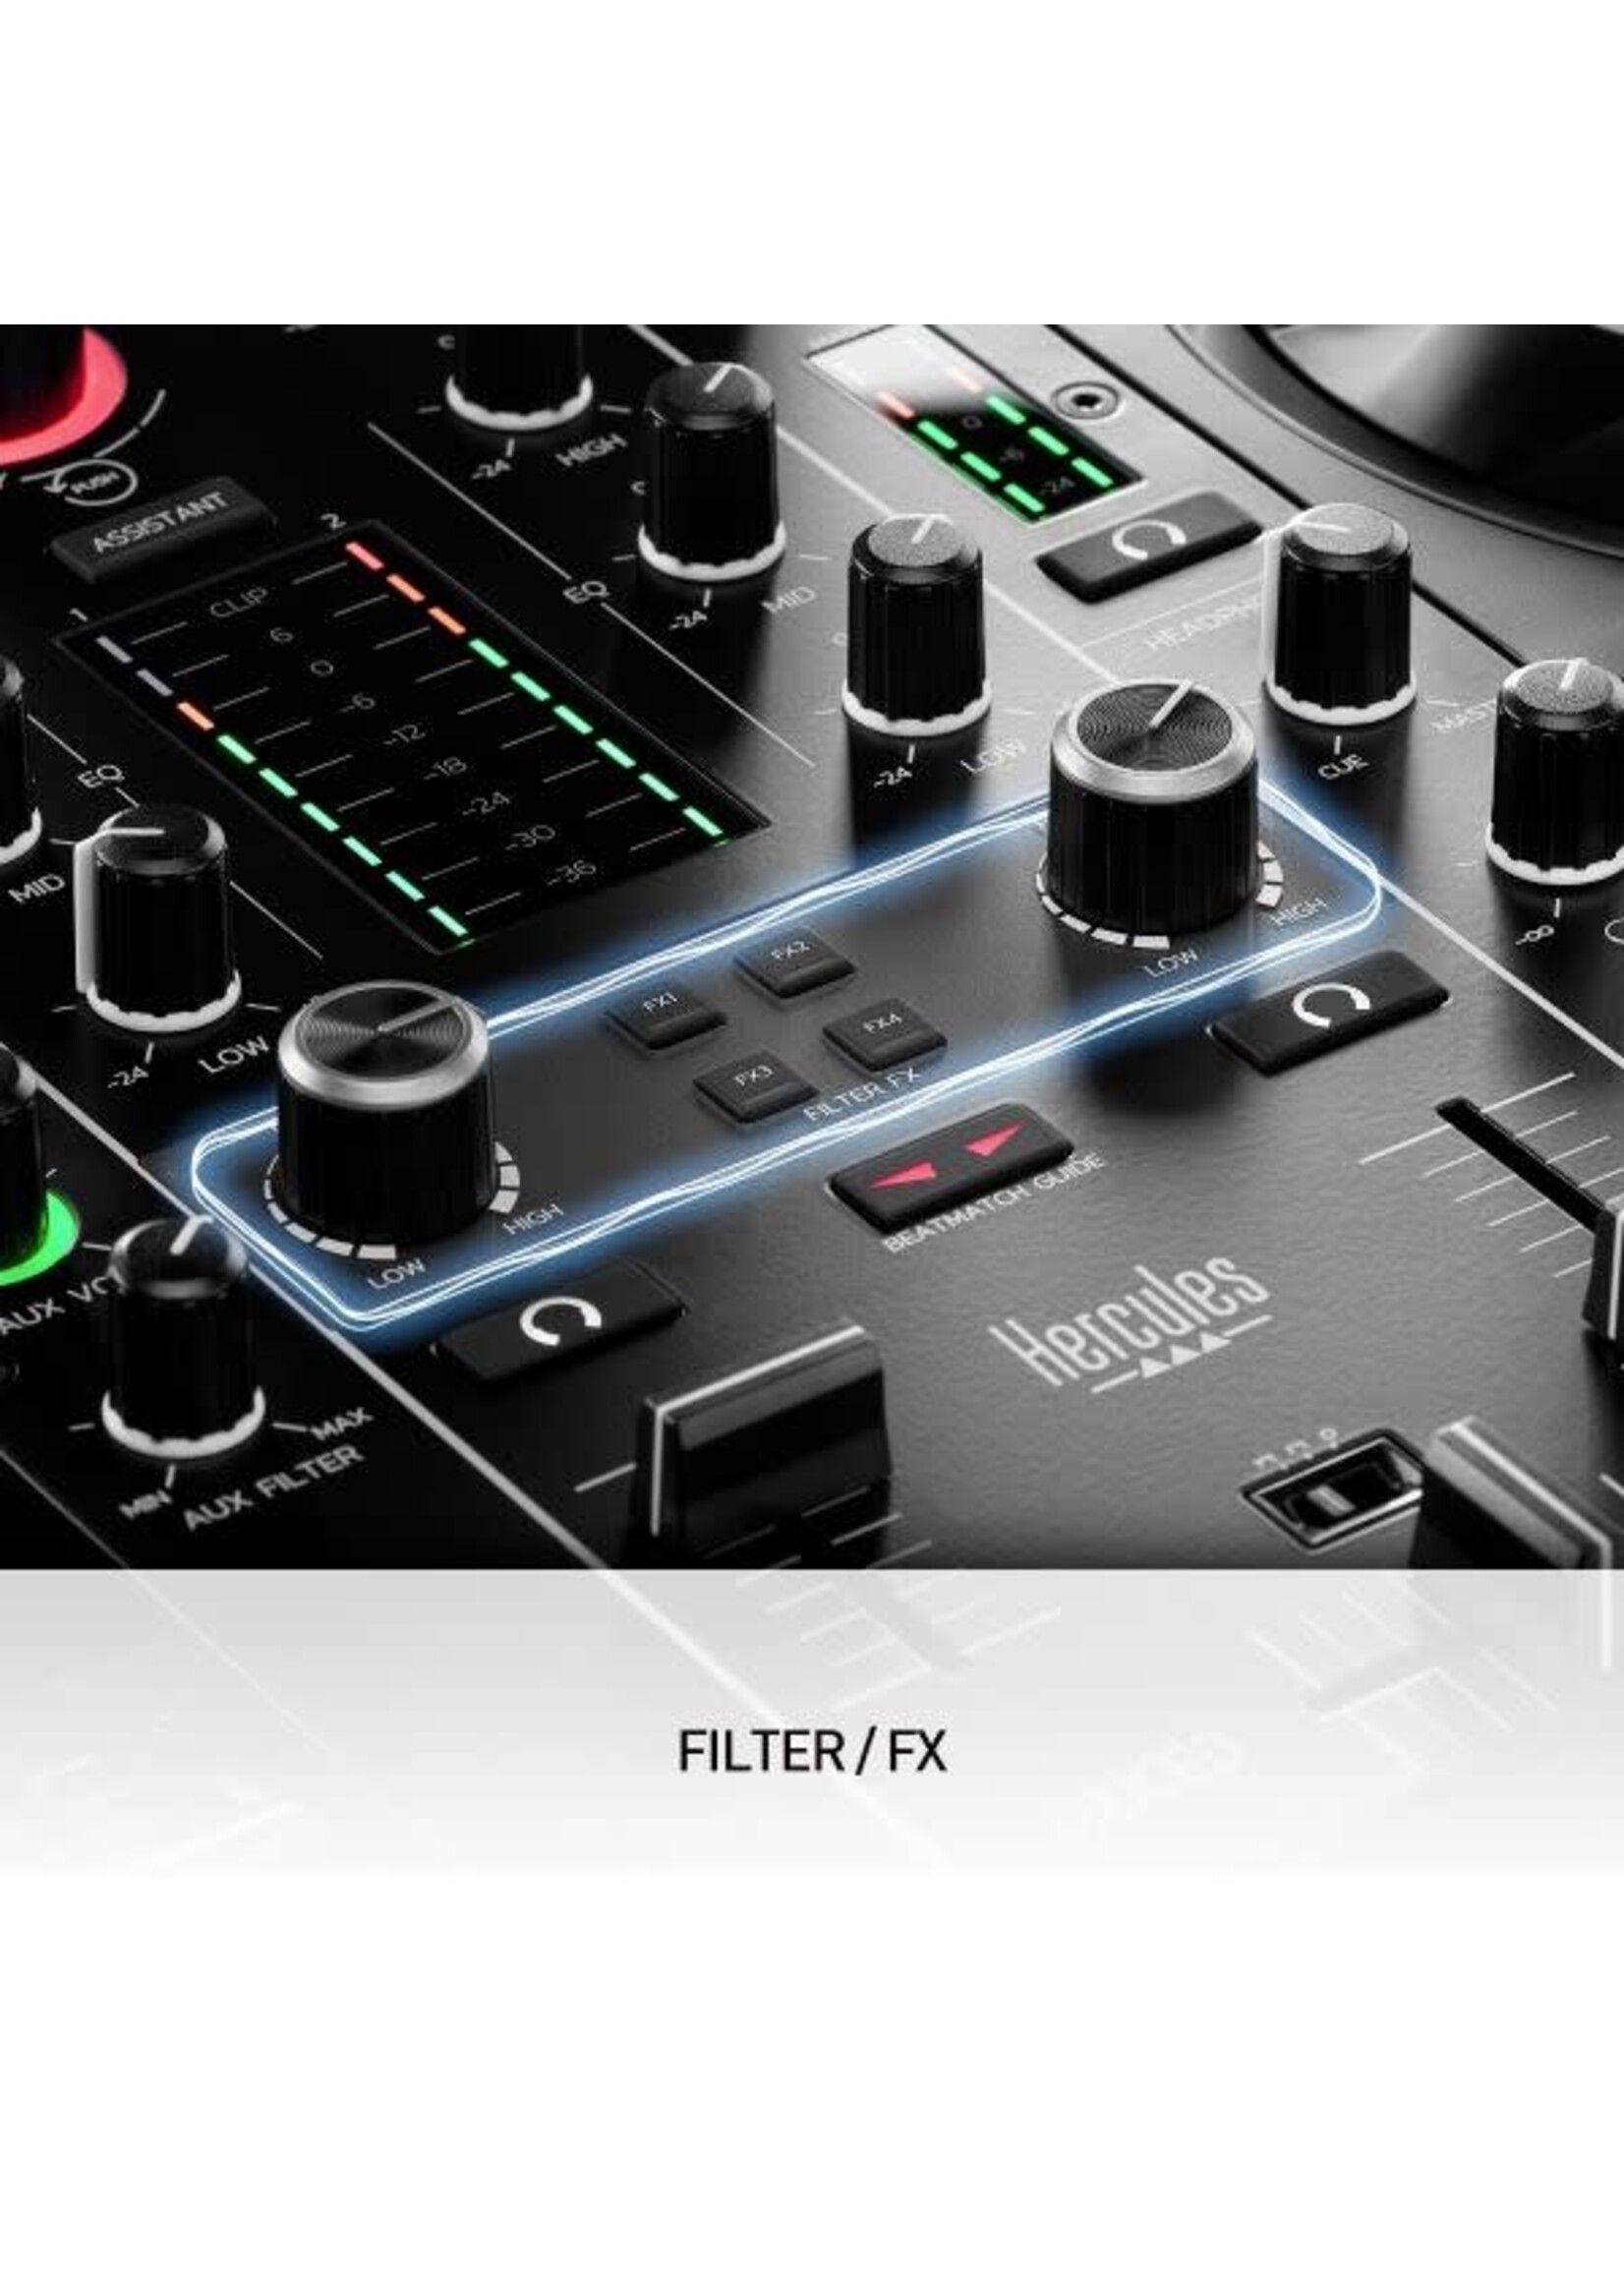 Hercules DJ DJControl Inpulse 500 DJ Controller/Interface